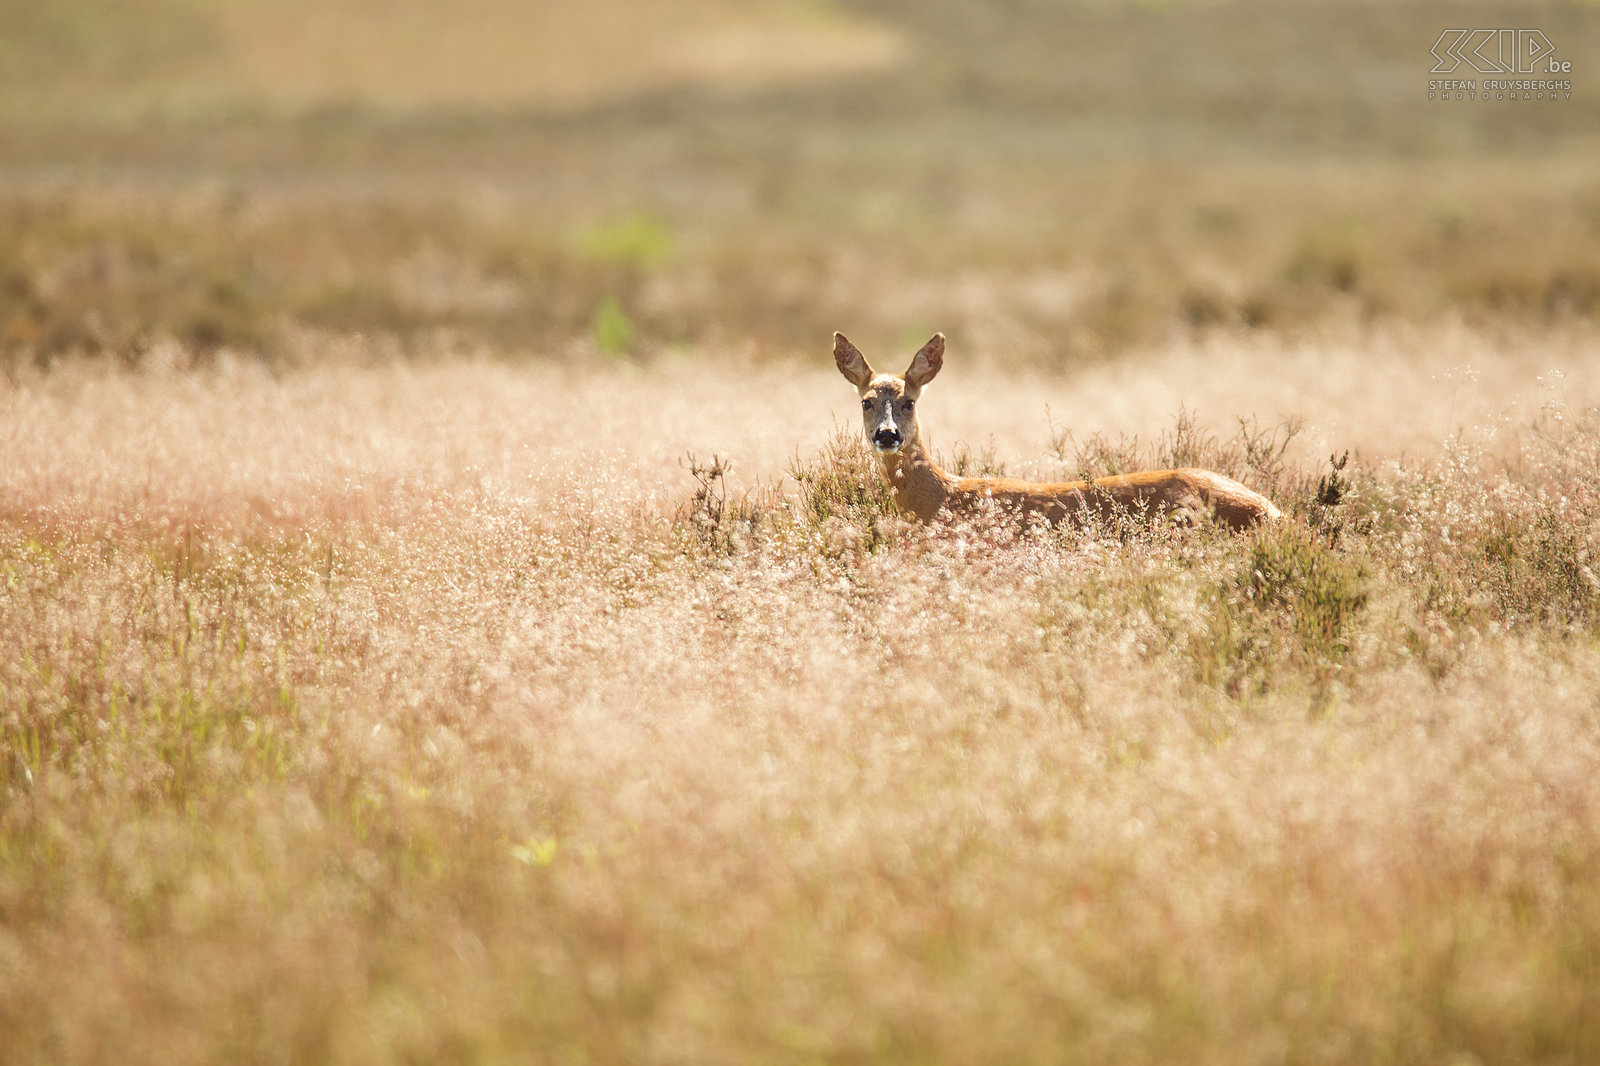 Roe deer A roe deer in the open heathland of Westerheide nabij Hilversum in the Netherlands. Stefan Cruysberghs